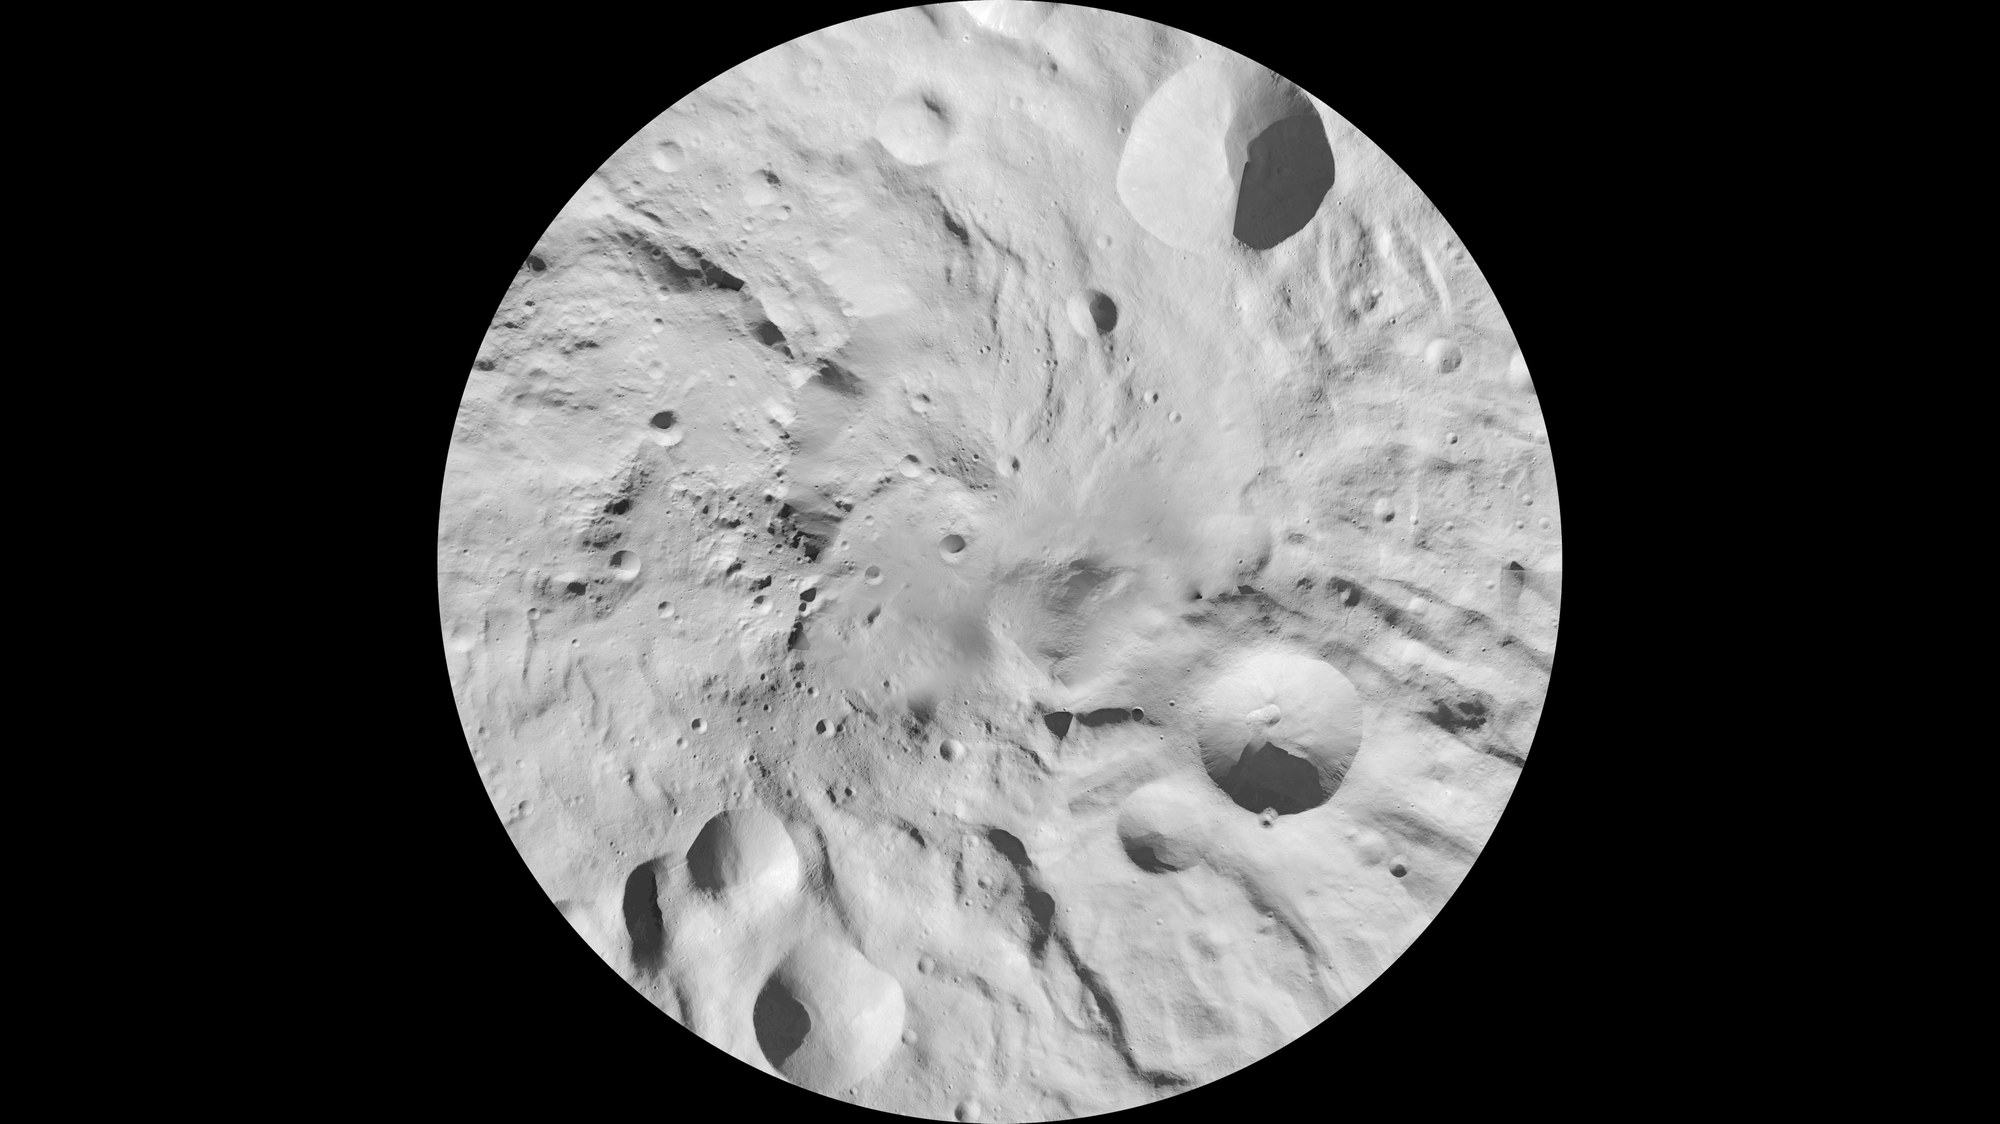 South pole of Vesta